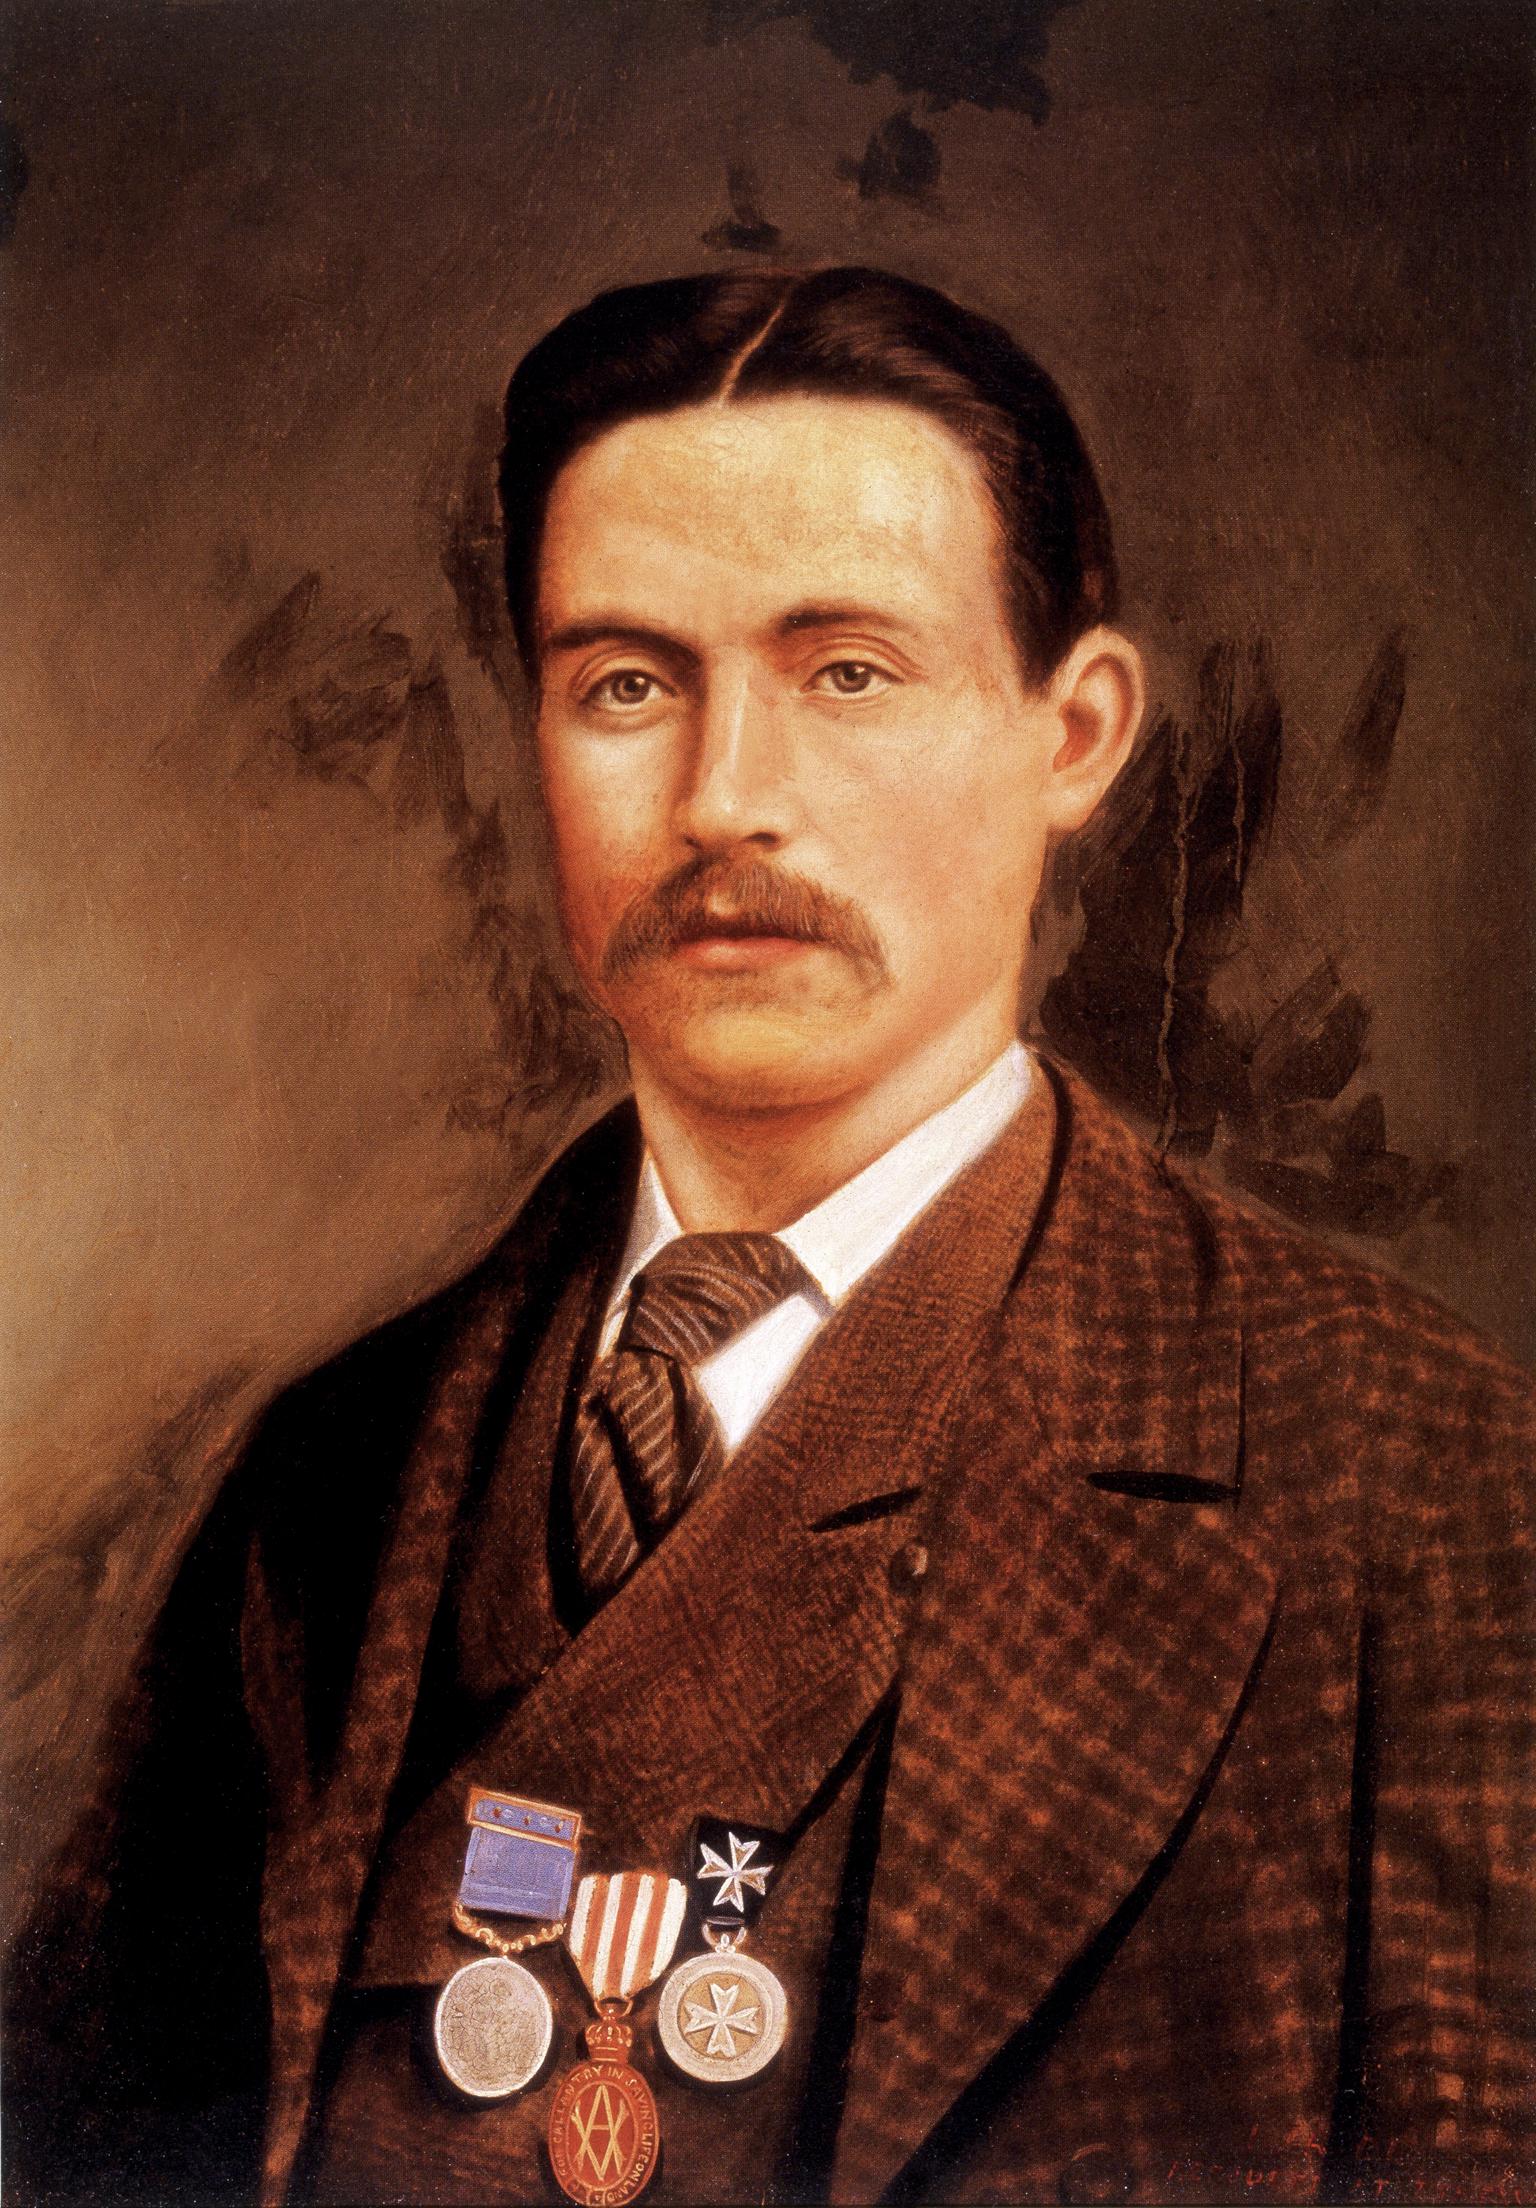 Isaac Pride's portrait, photograph